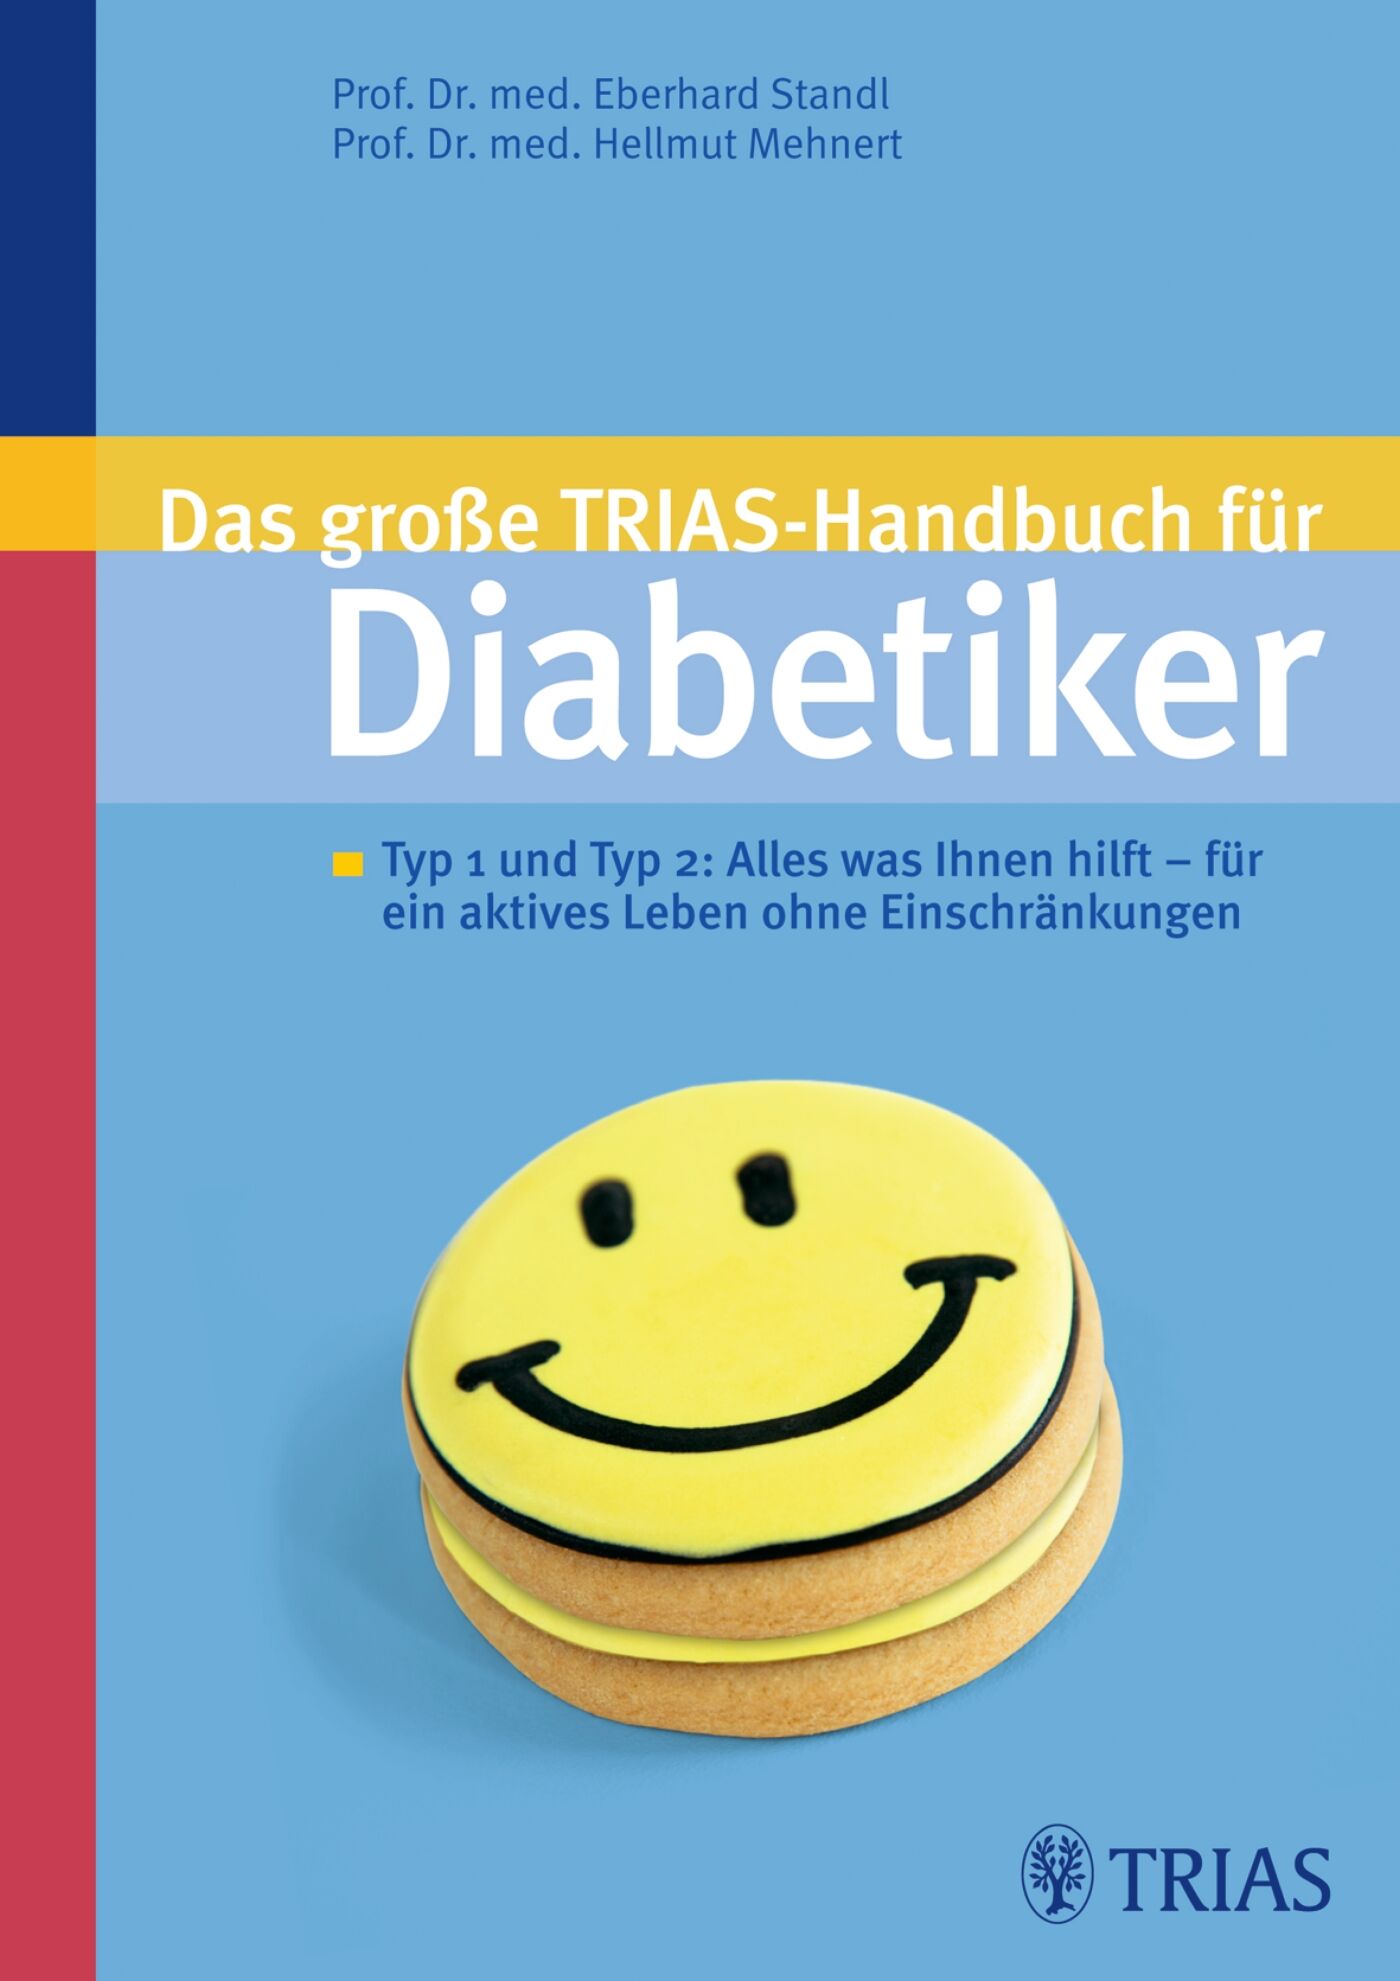 Das große TRIAS-Handbuch für Diabetiker, 9783830423560